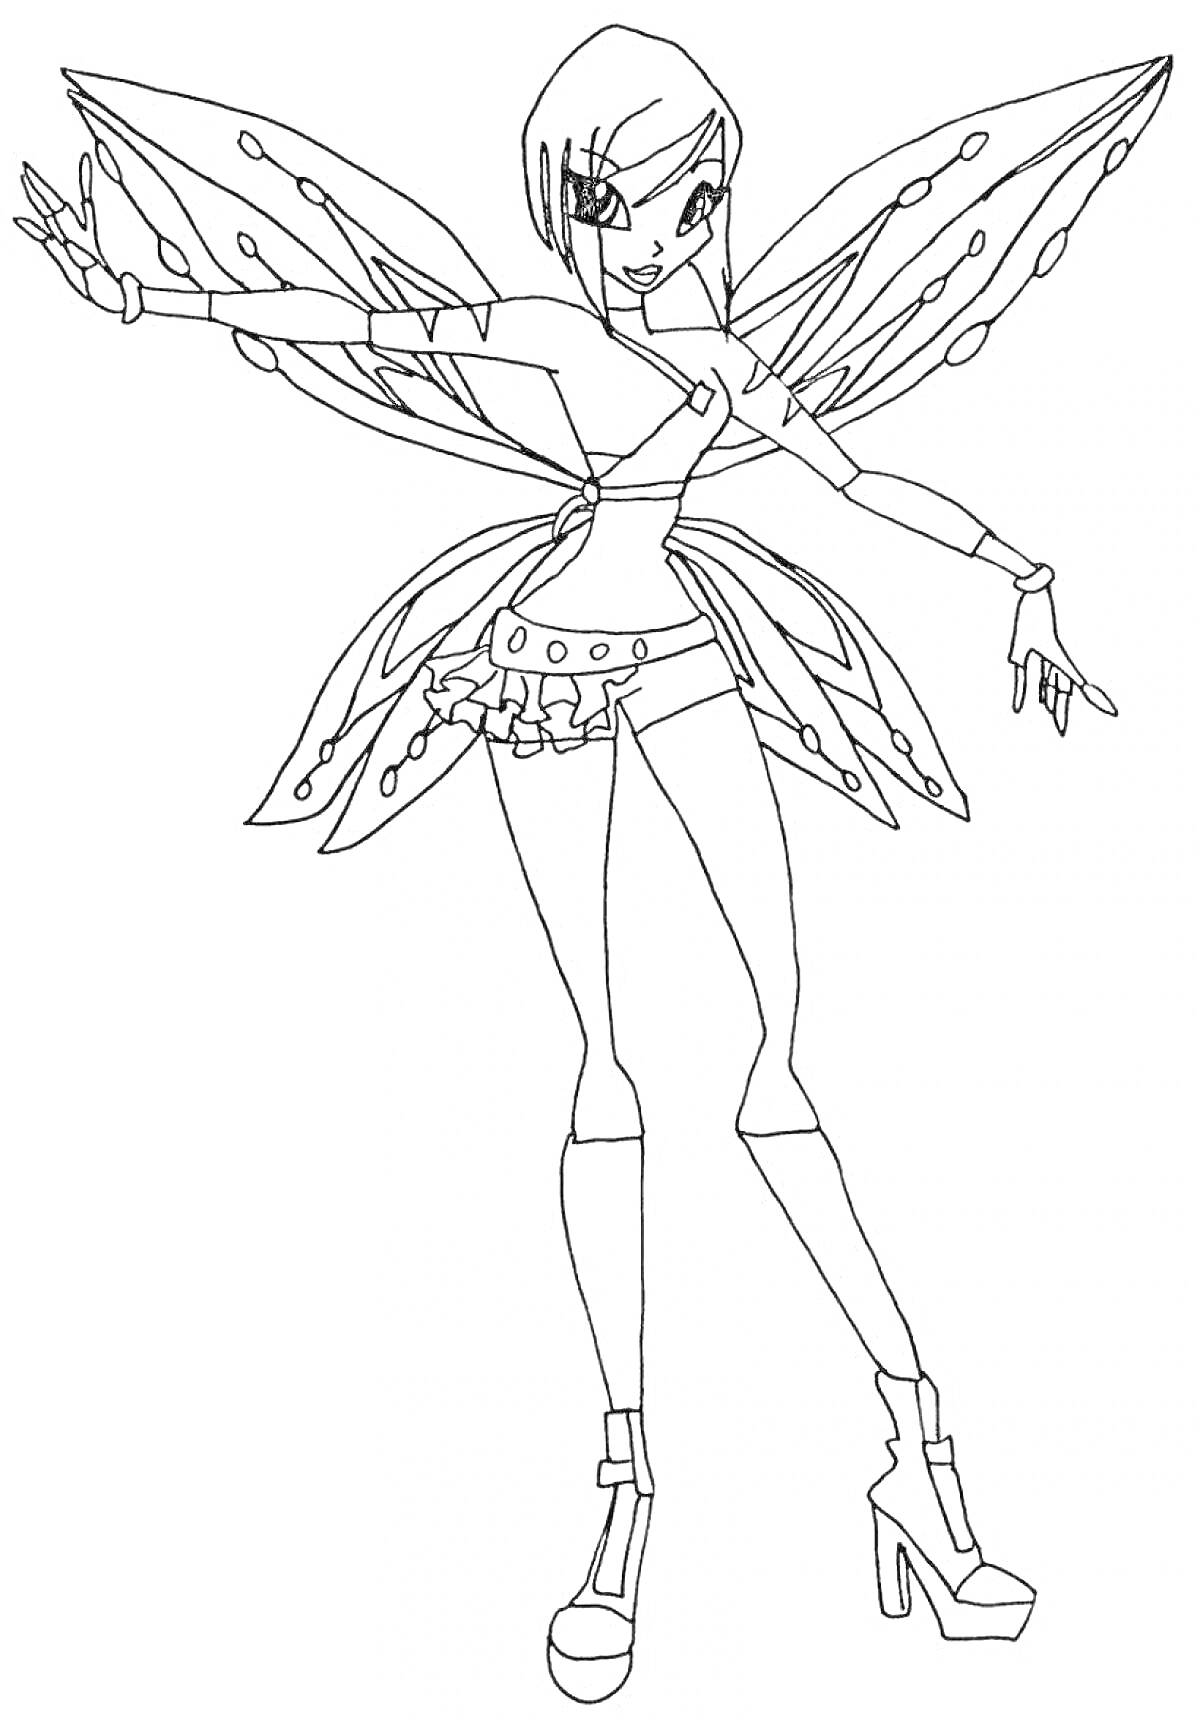 Раскраска Текна из Винкс с волшебными крыльями и короткой юбкой, позирует на высоких каблуках